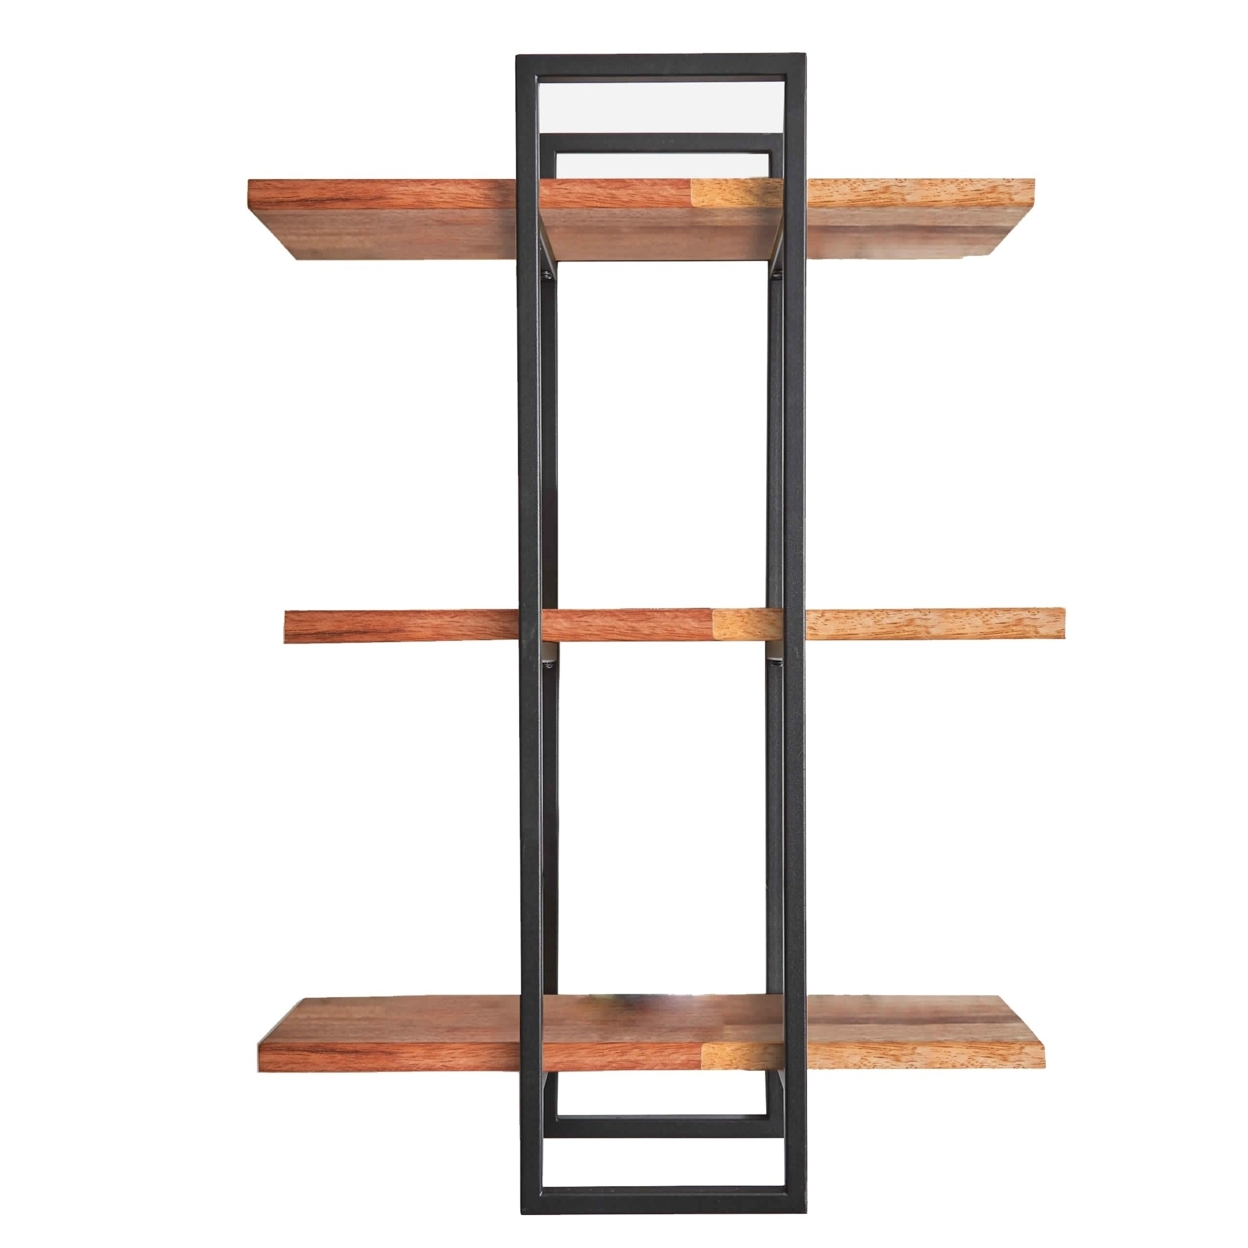 3 Tier Wood And Metal Frame Wall Display With Tubular Frame, Brown And Black- Saltoro Sherpi